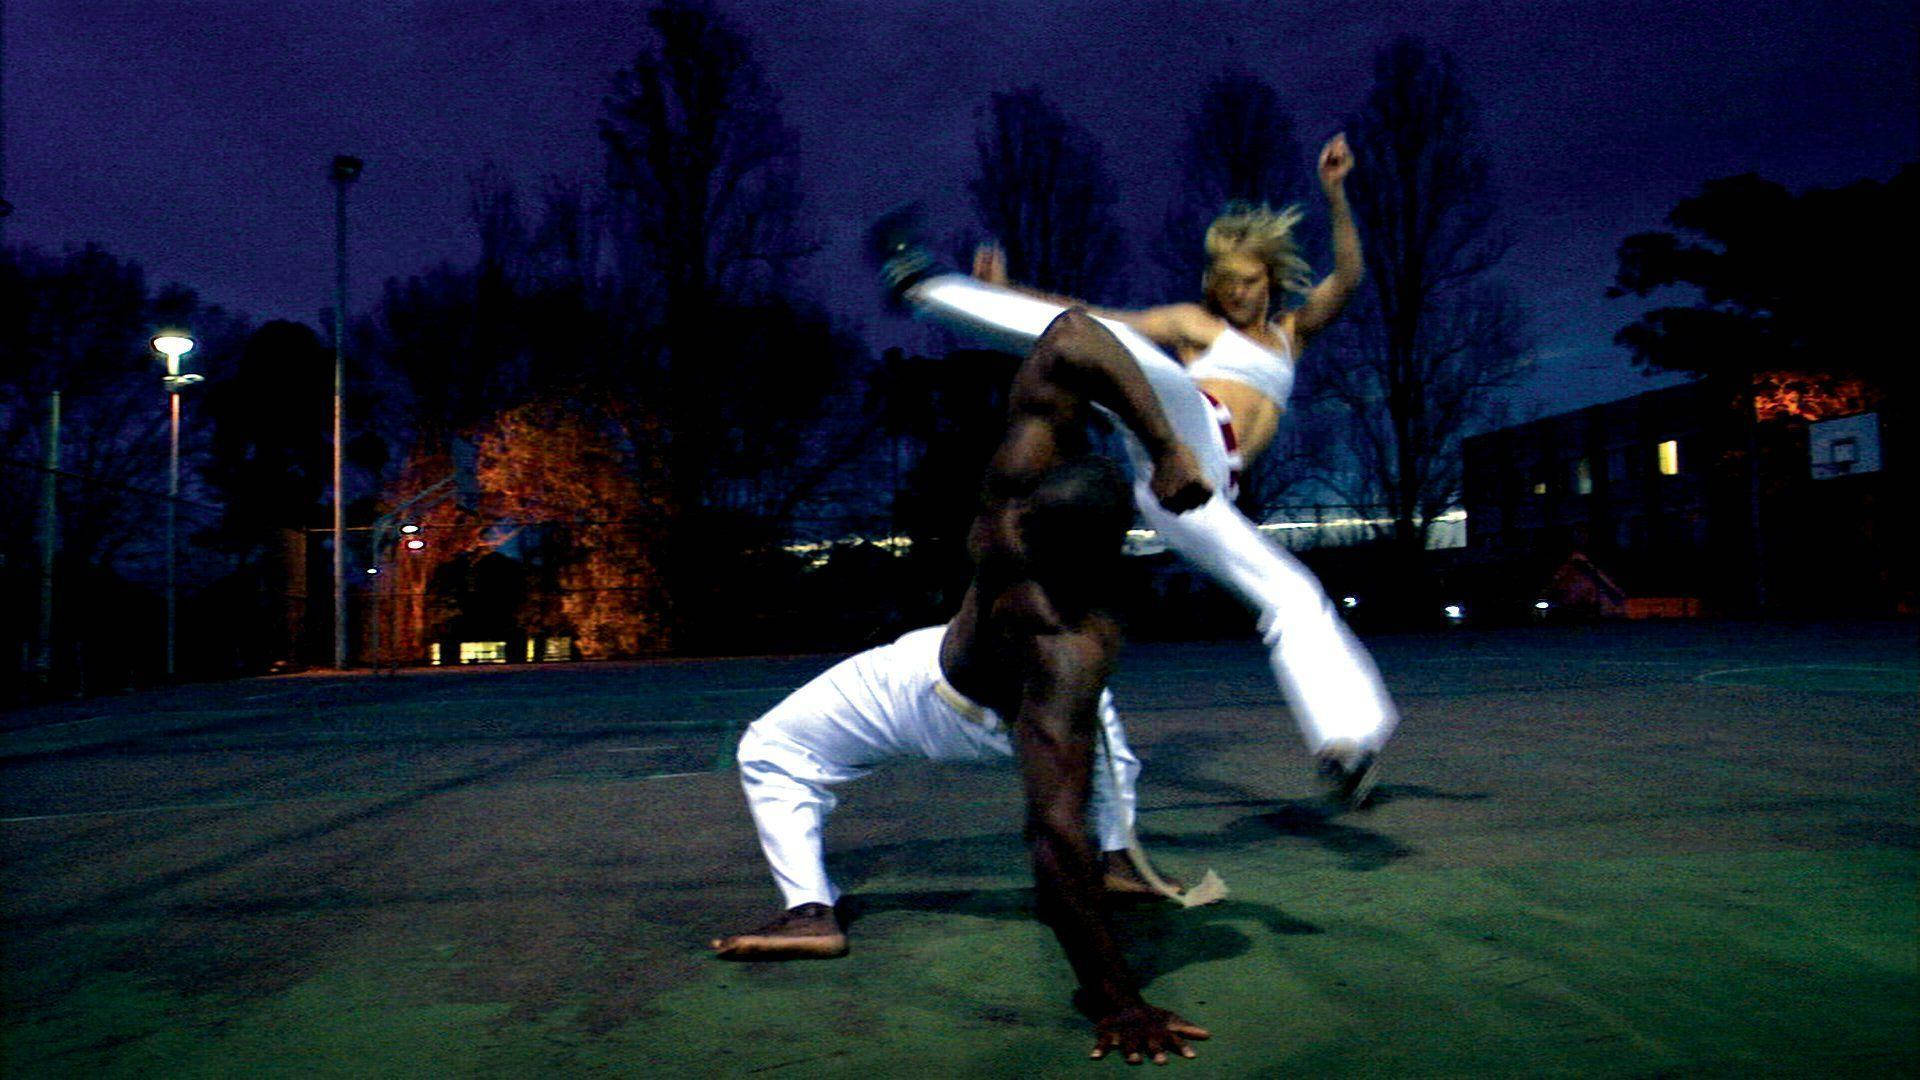 Capoeirakampf Am Abend Wallpaper